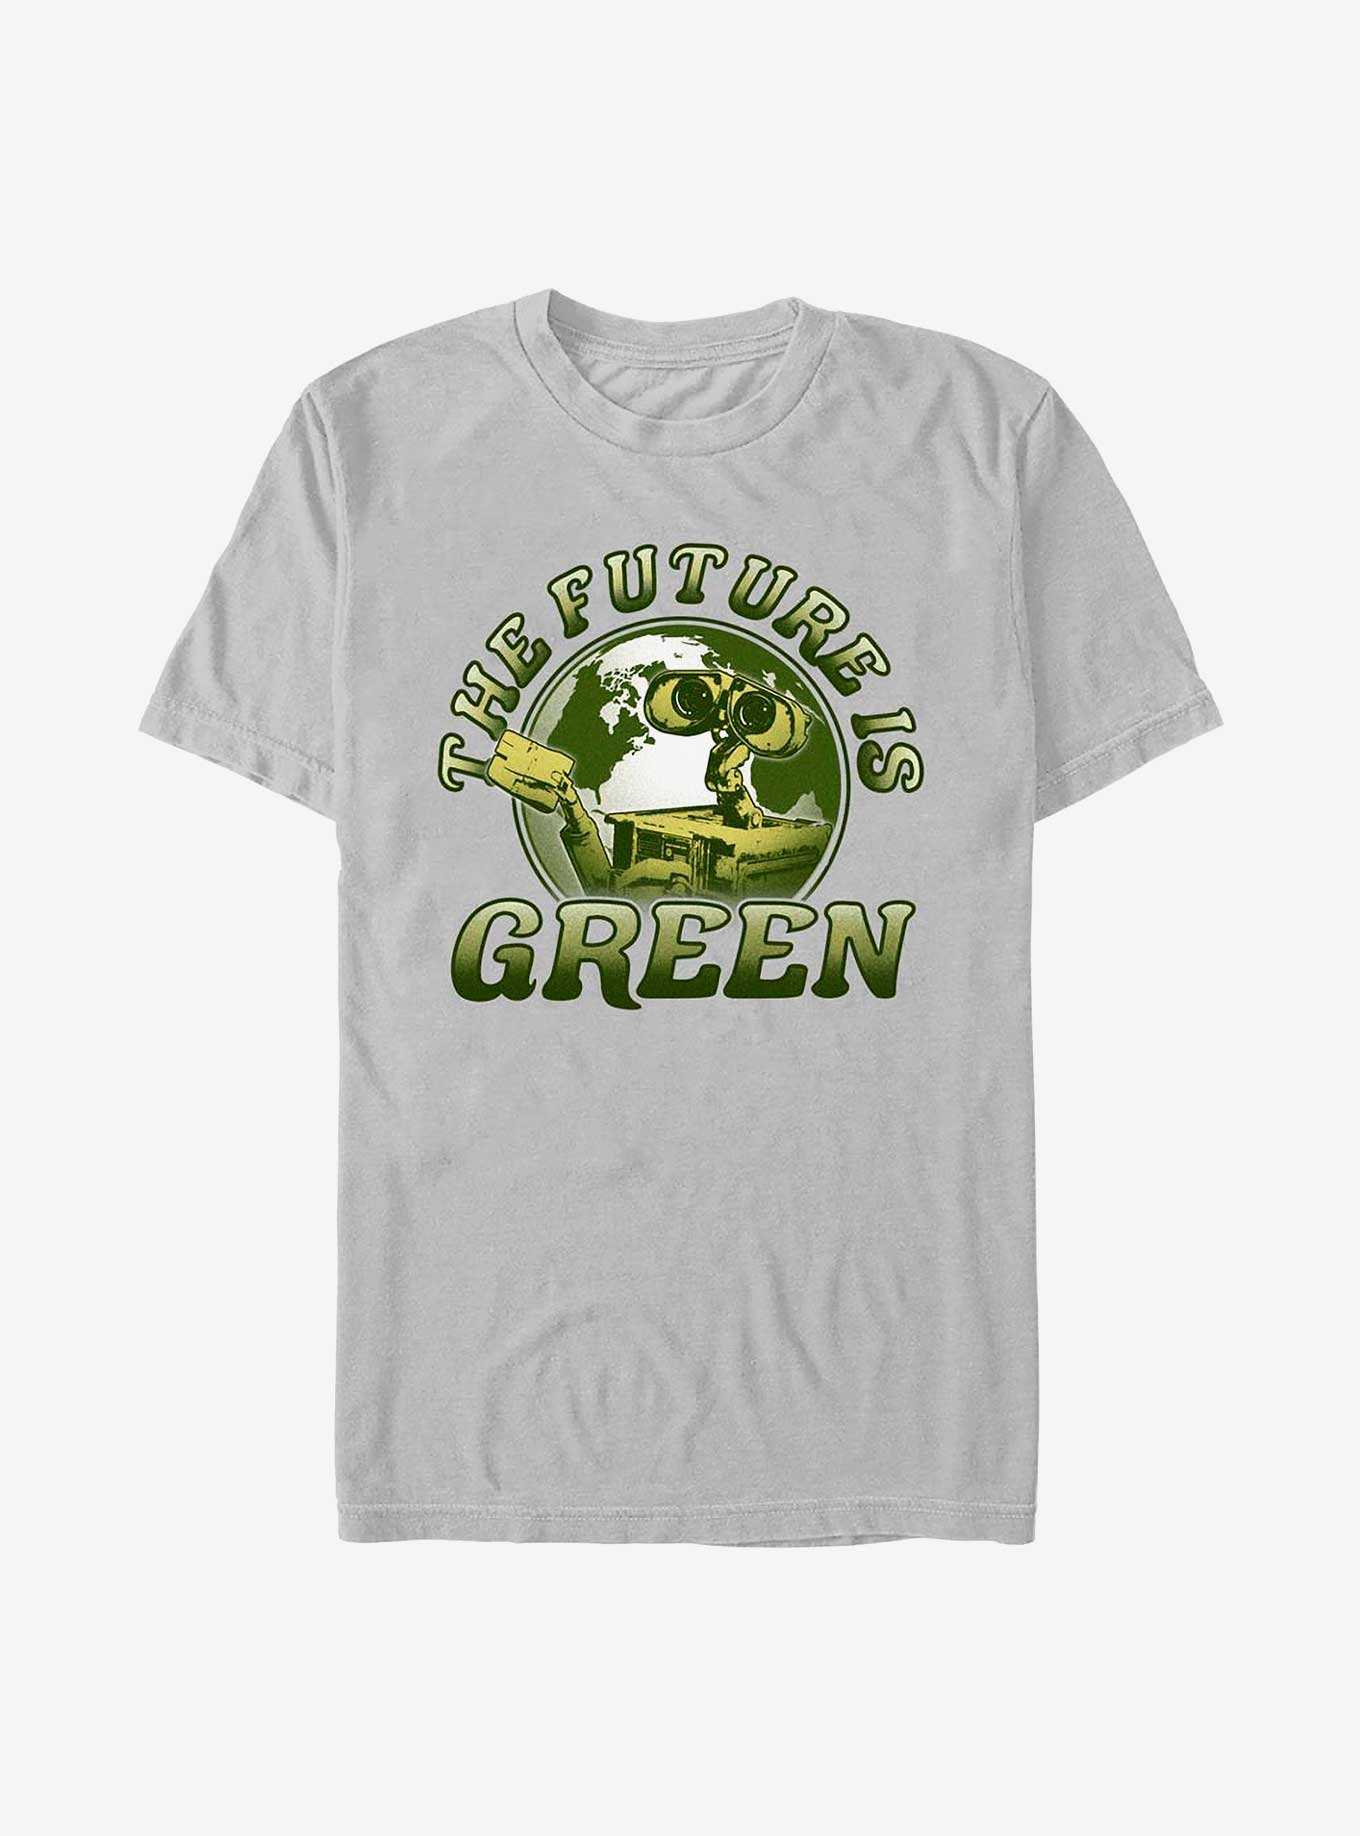 Disney Pixar Wall-E Earth Day Green Future T-Shirt, , hi-res